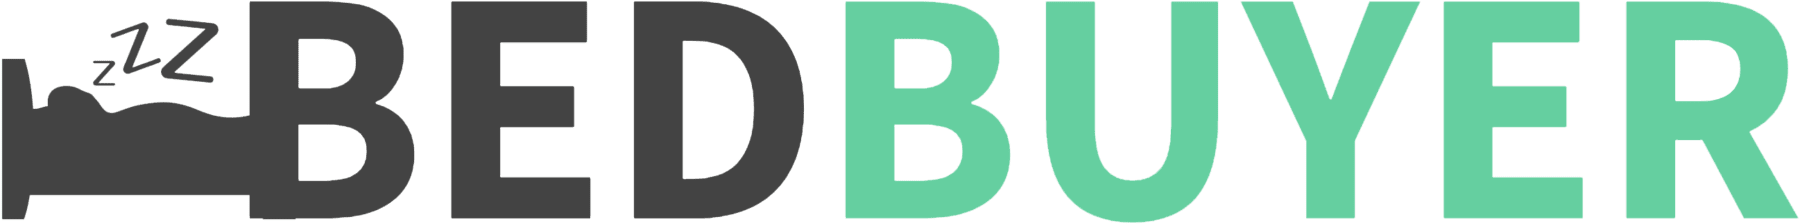 bedbuyer-logo-white-bkdg-1